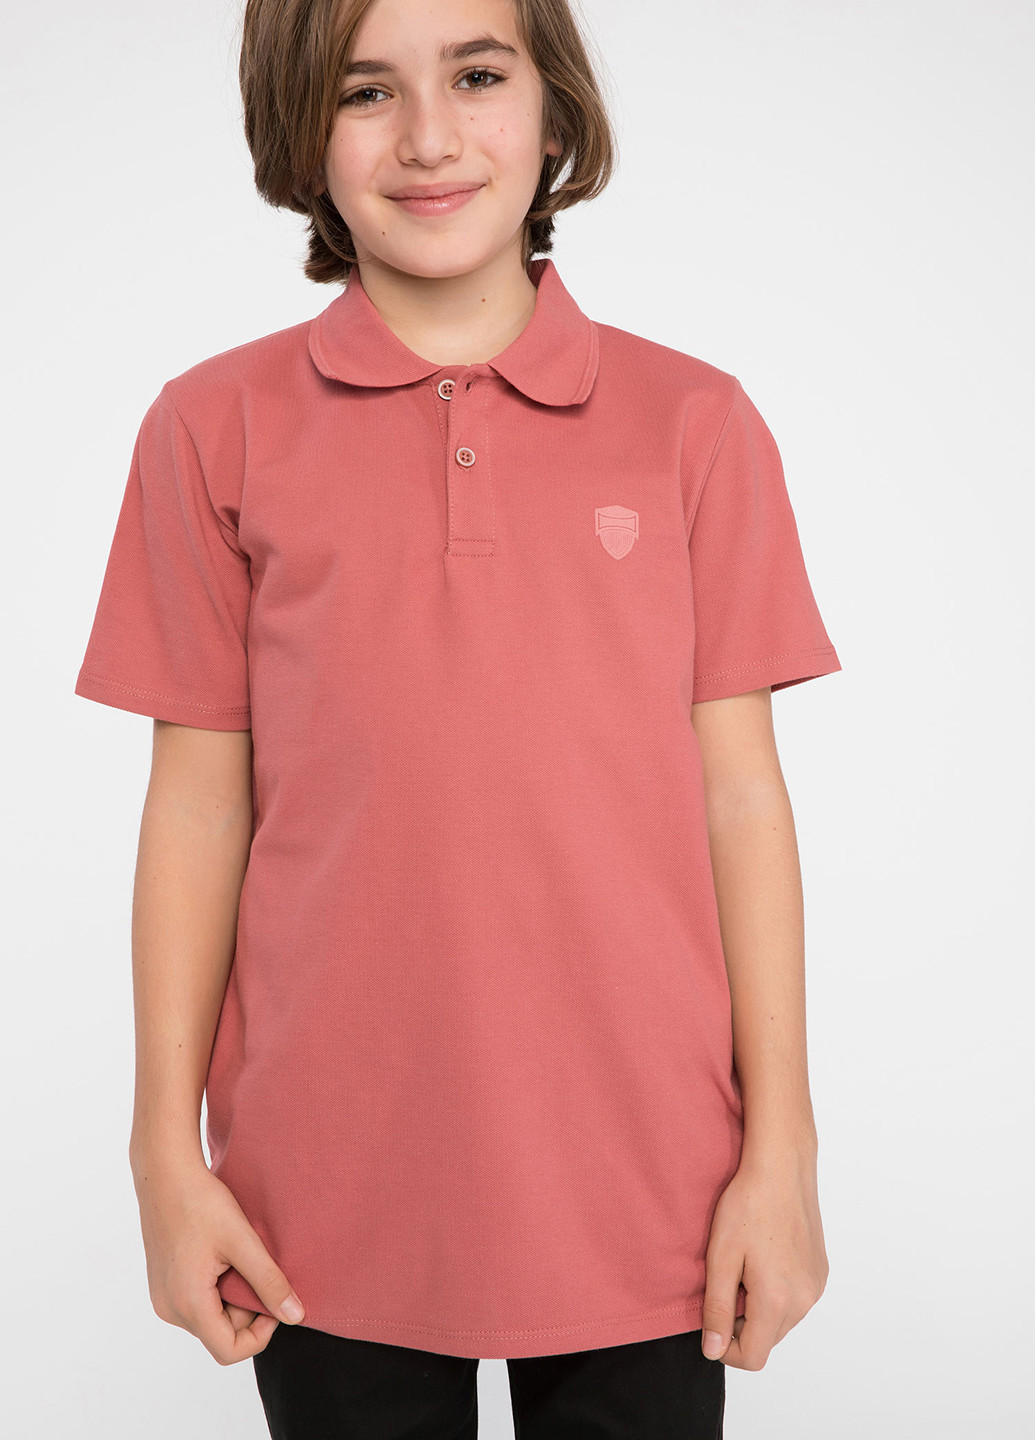 Коралловая детская футболка-поло для мальчика DeFacto